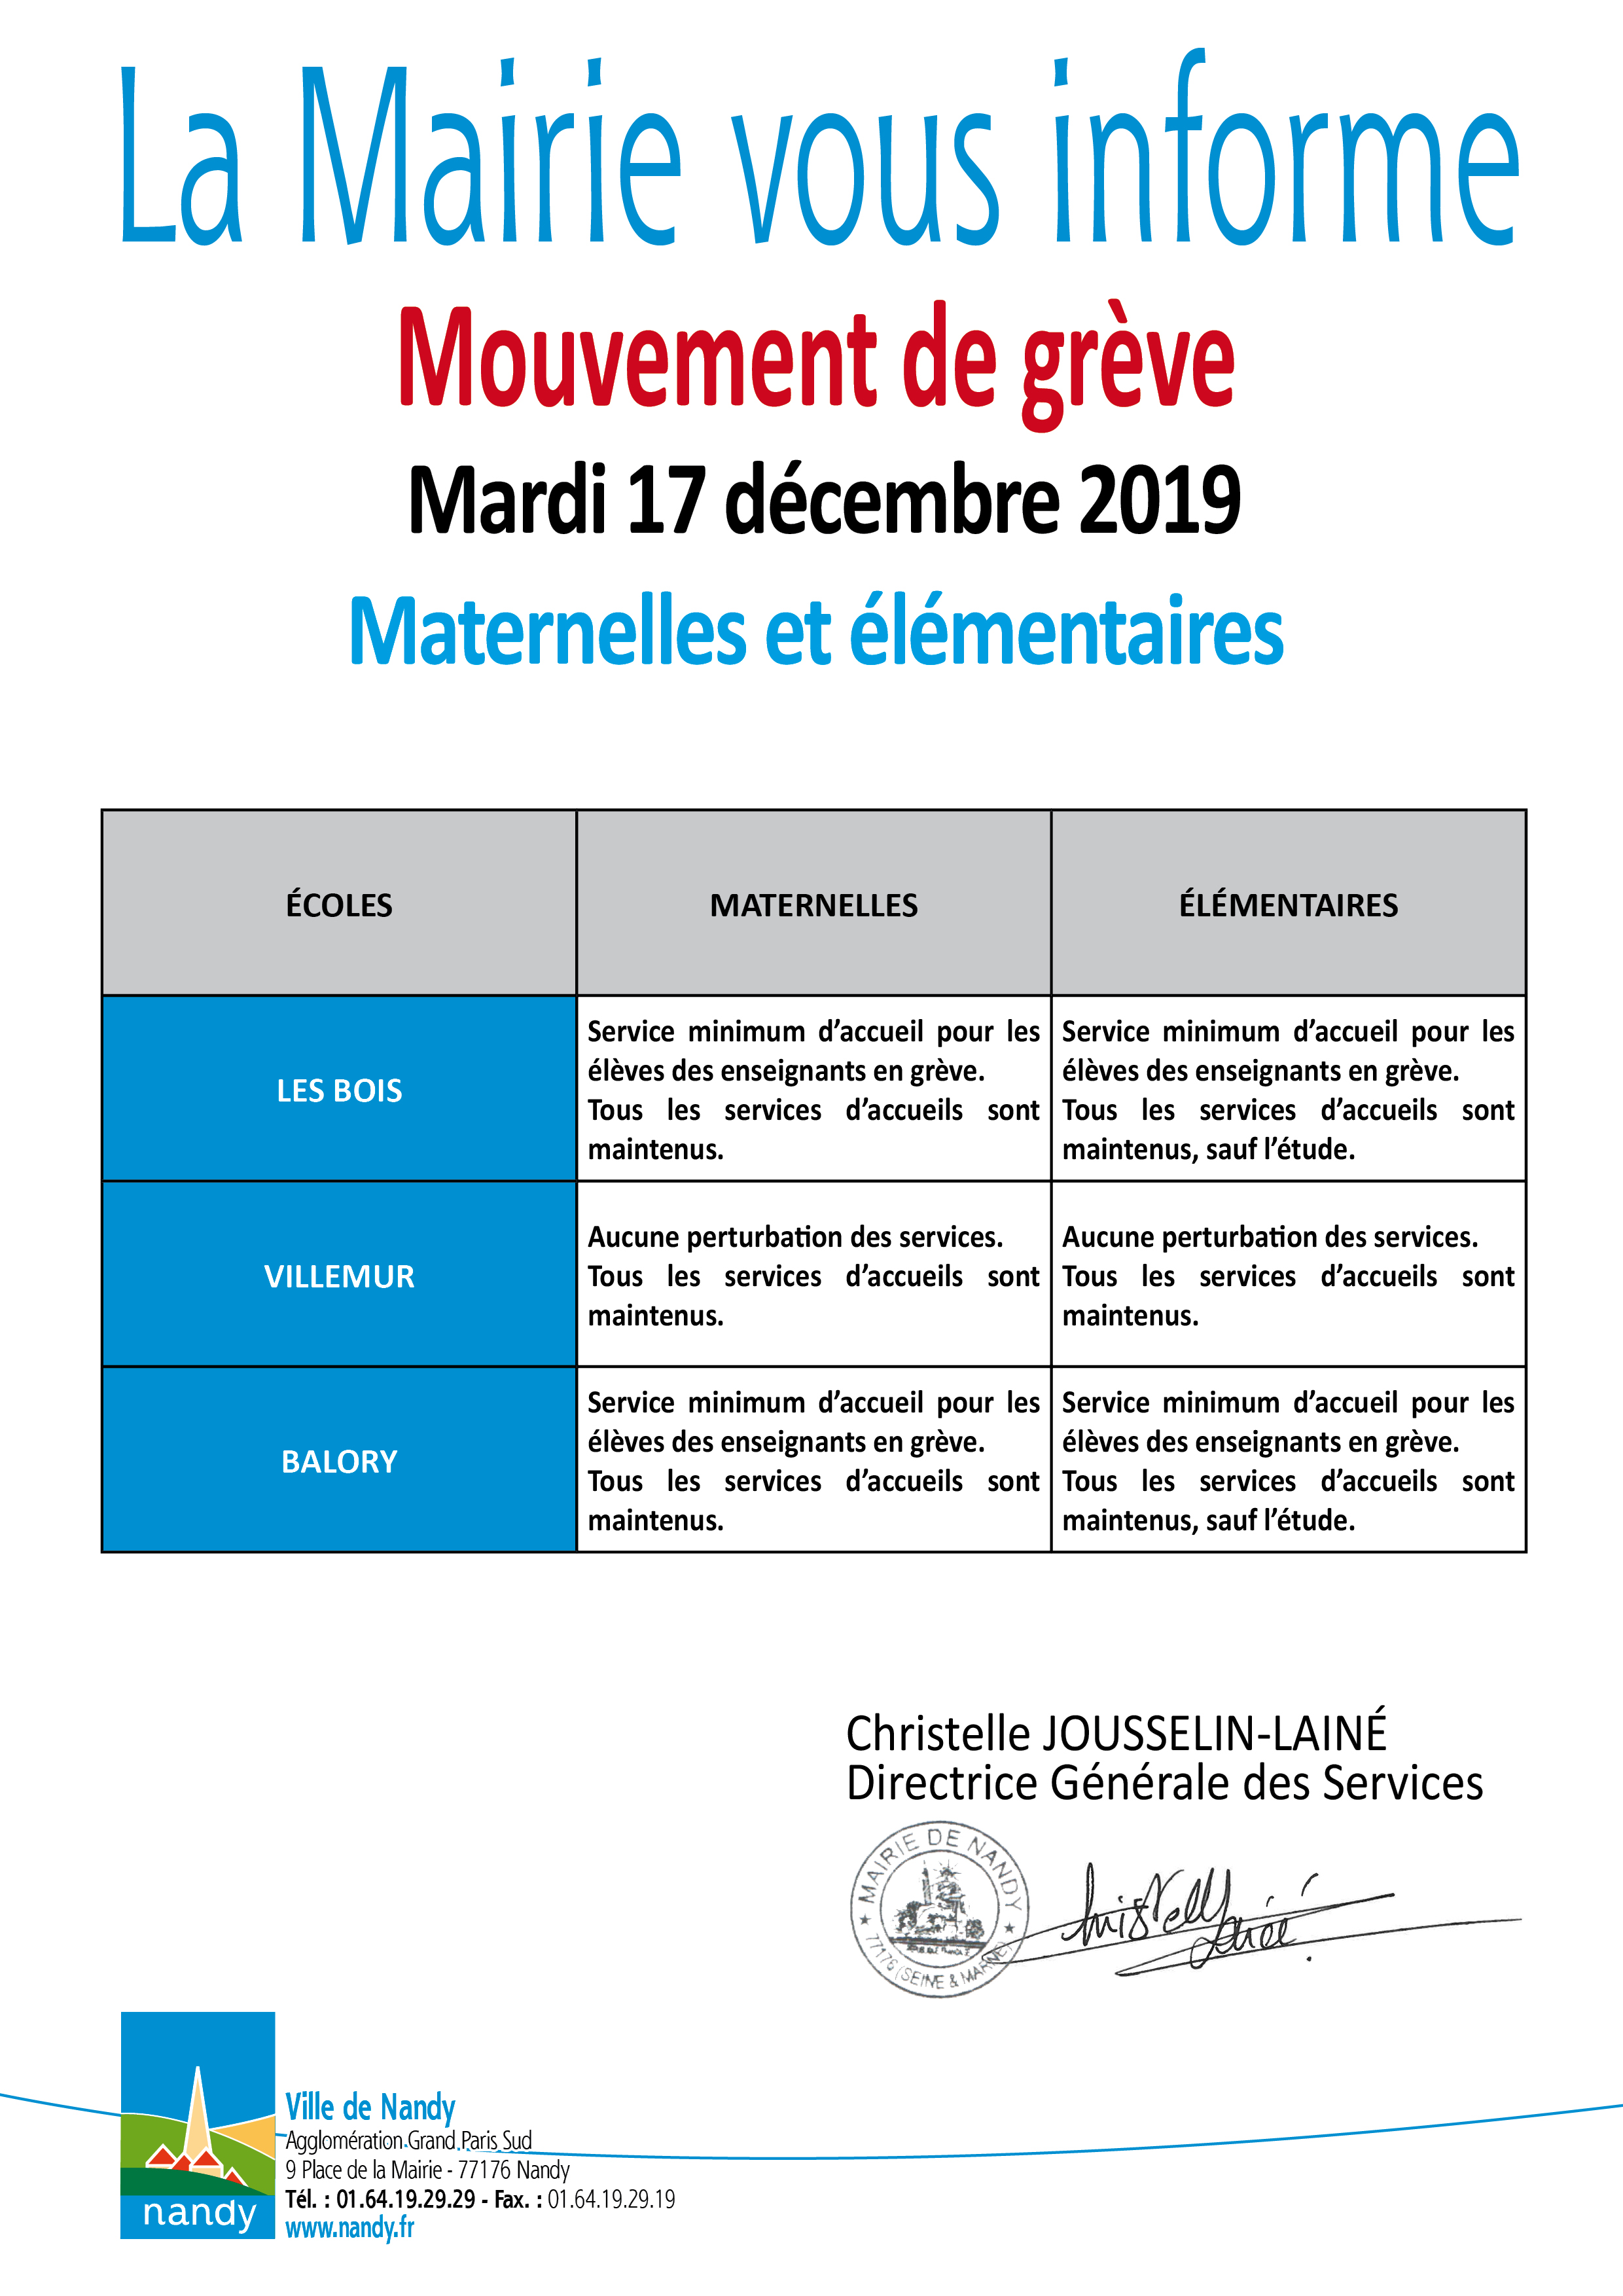 La Mairie vous informe grève mardi 17 décembre 2019